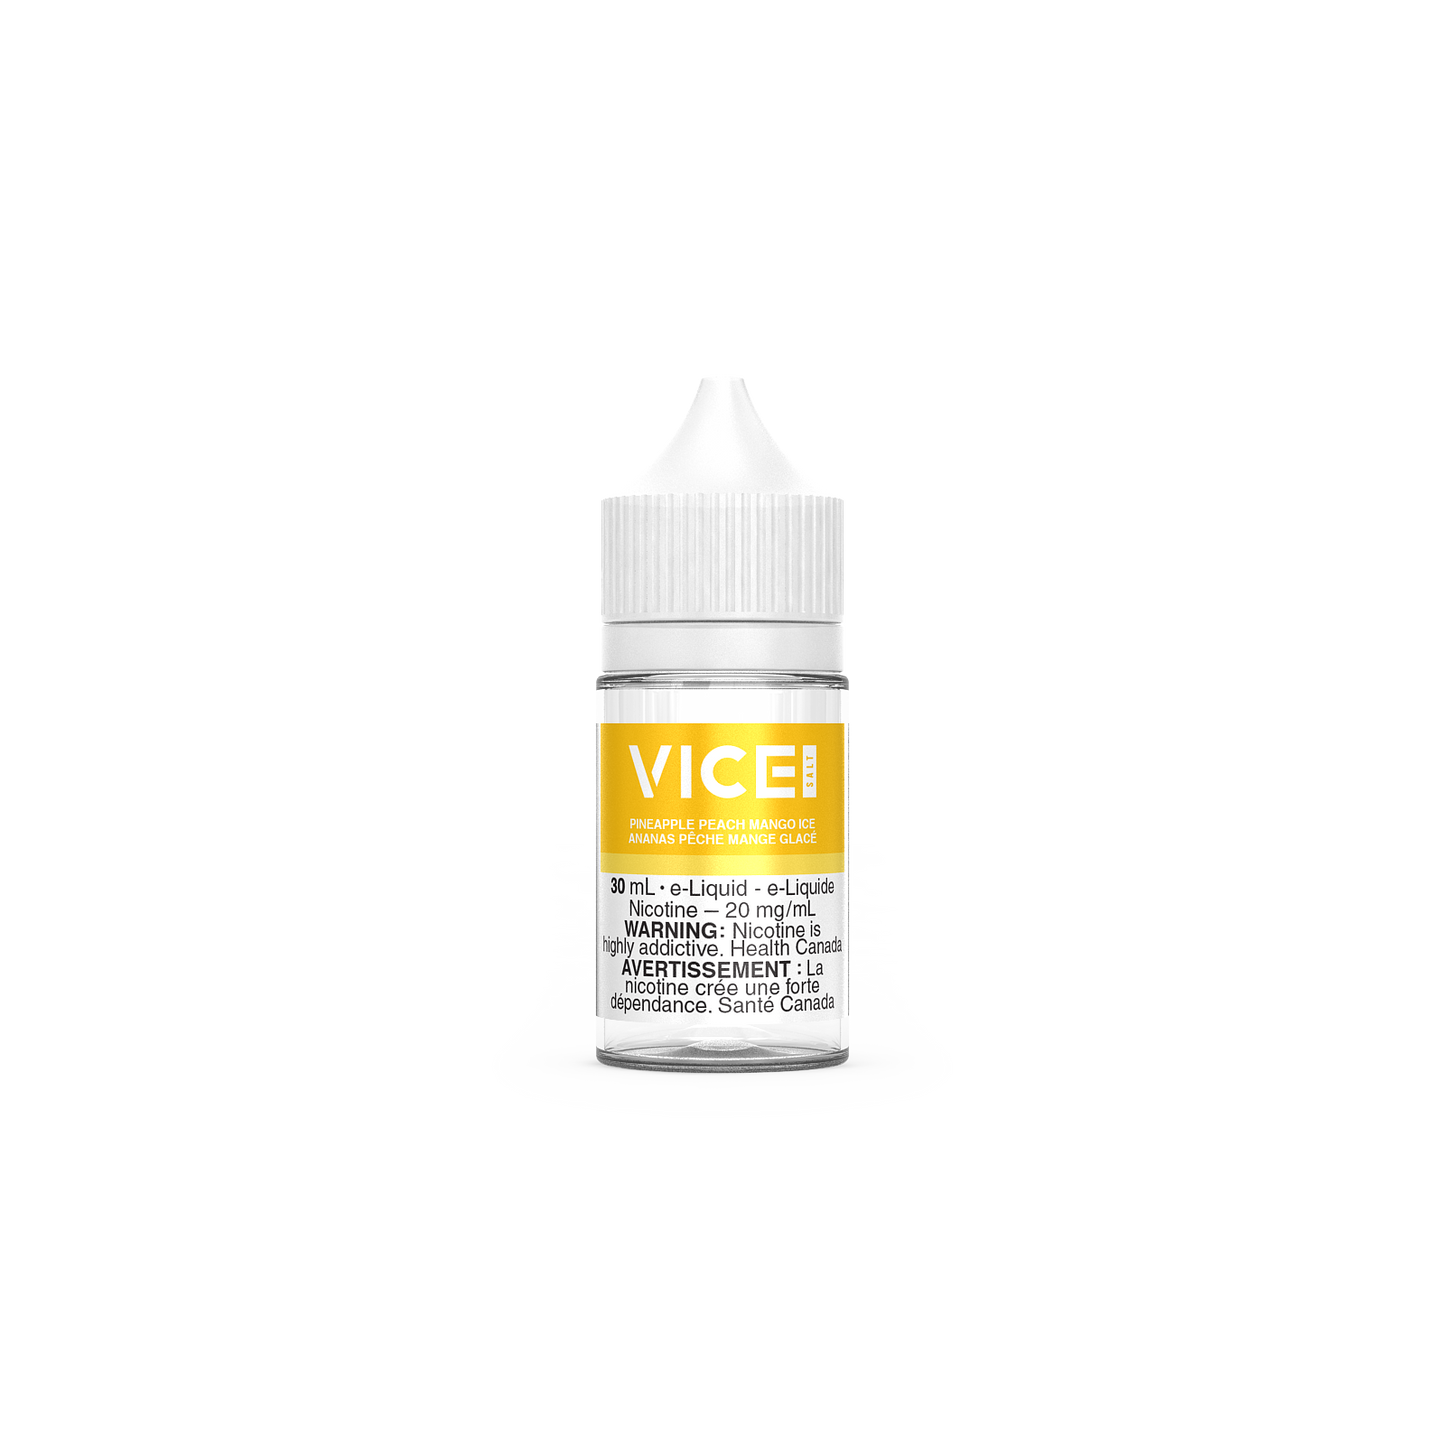 VICE SALT ELIQUID EJUICE Pineapple Peach Mango Ice 30mL Bottle